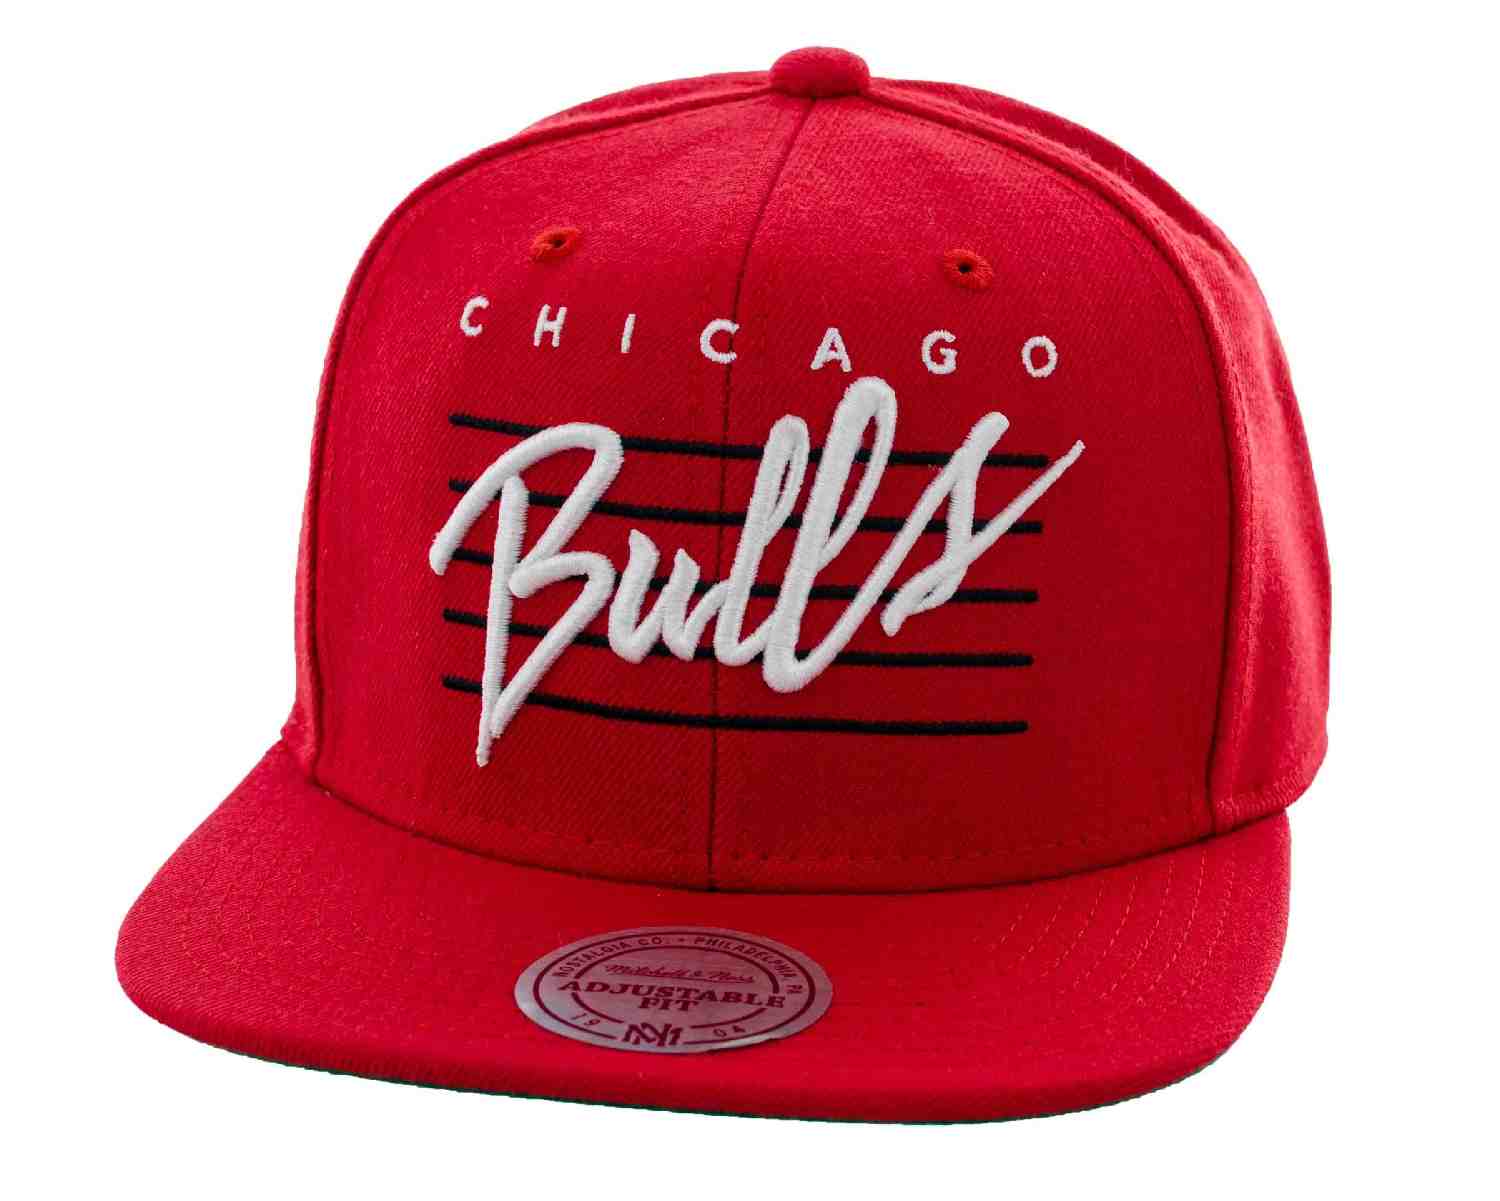 Bulls Cursive Logo - Caps MITCHELL & NESS - Cursive Retro Script Chicago Bulls (BULLS ...